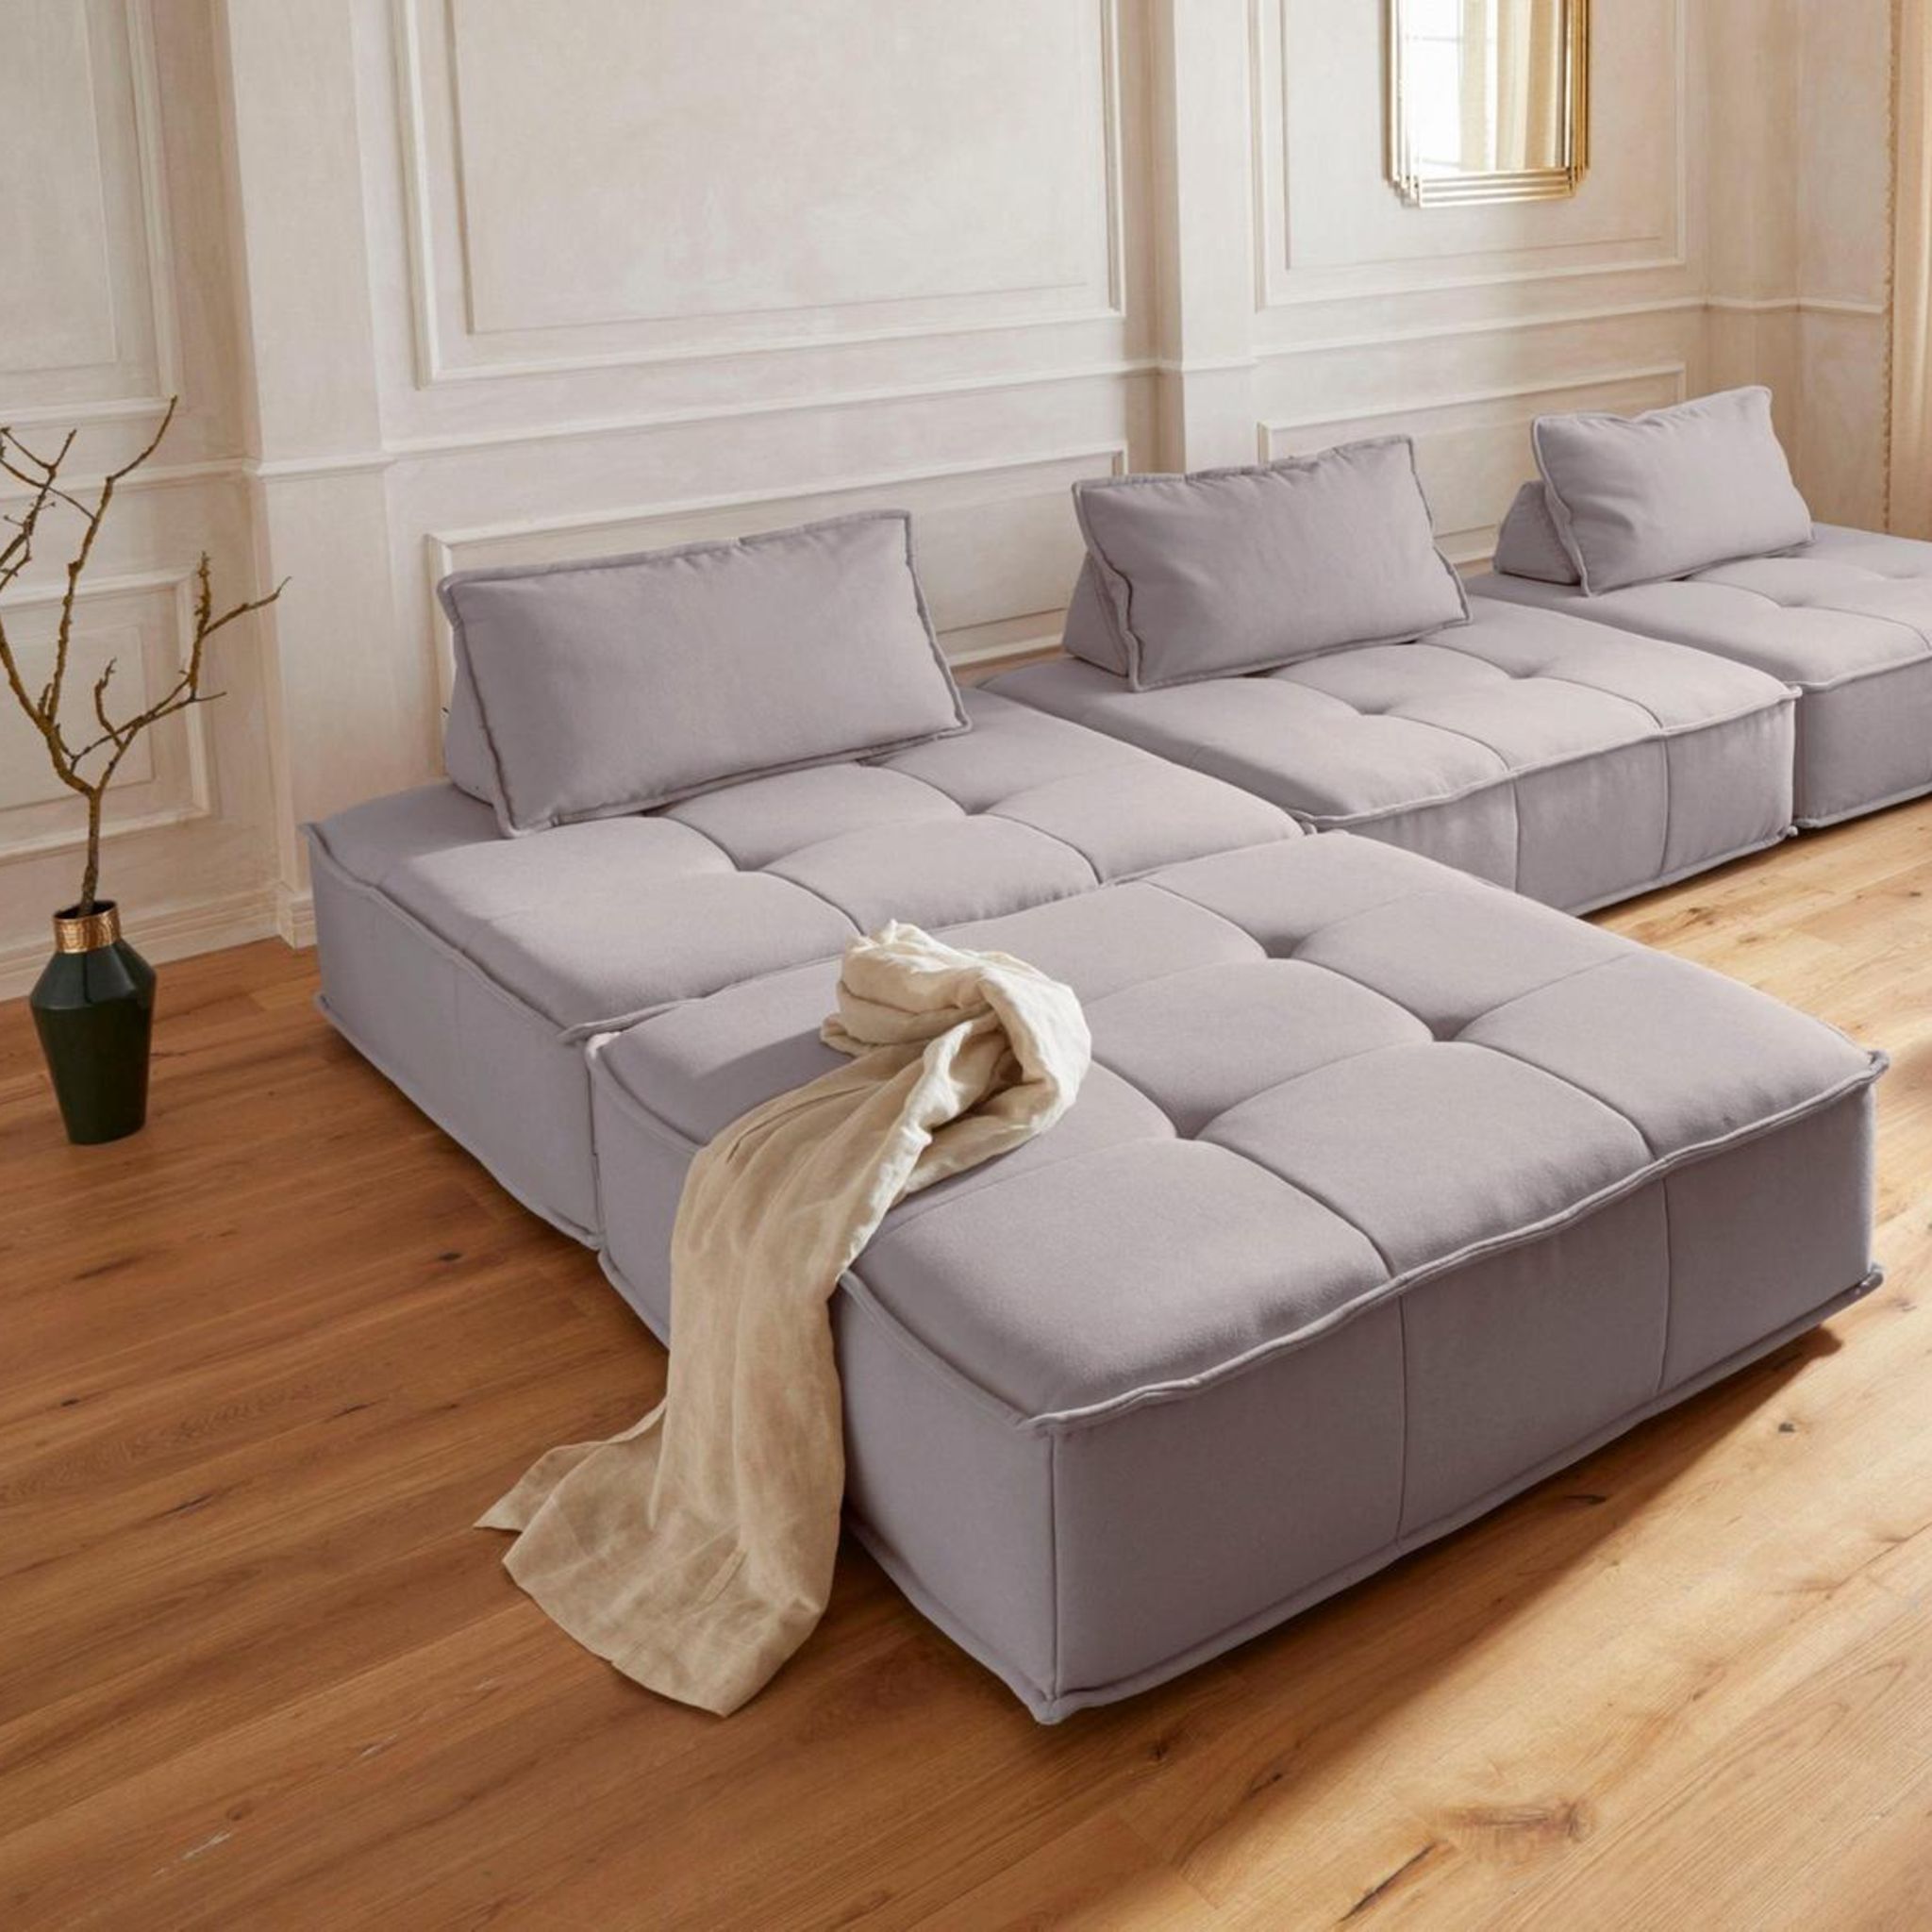 sofa-trends: das sind die gemütlichsten couch-ecken zum